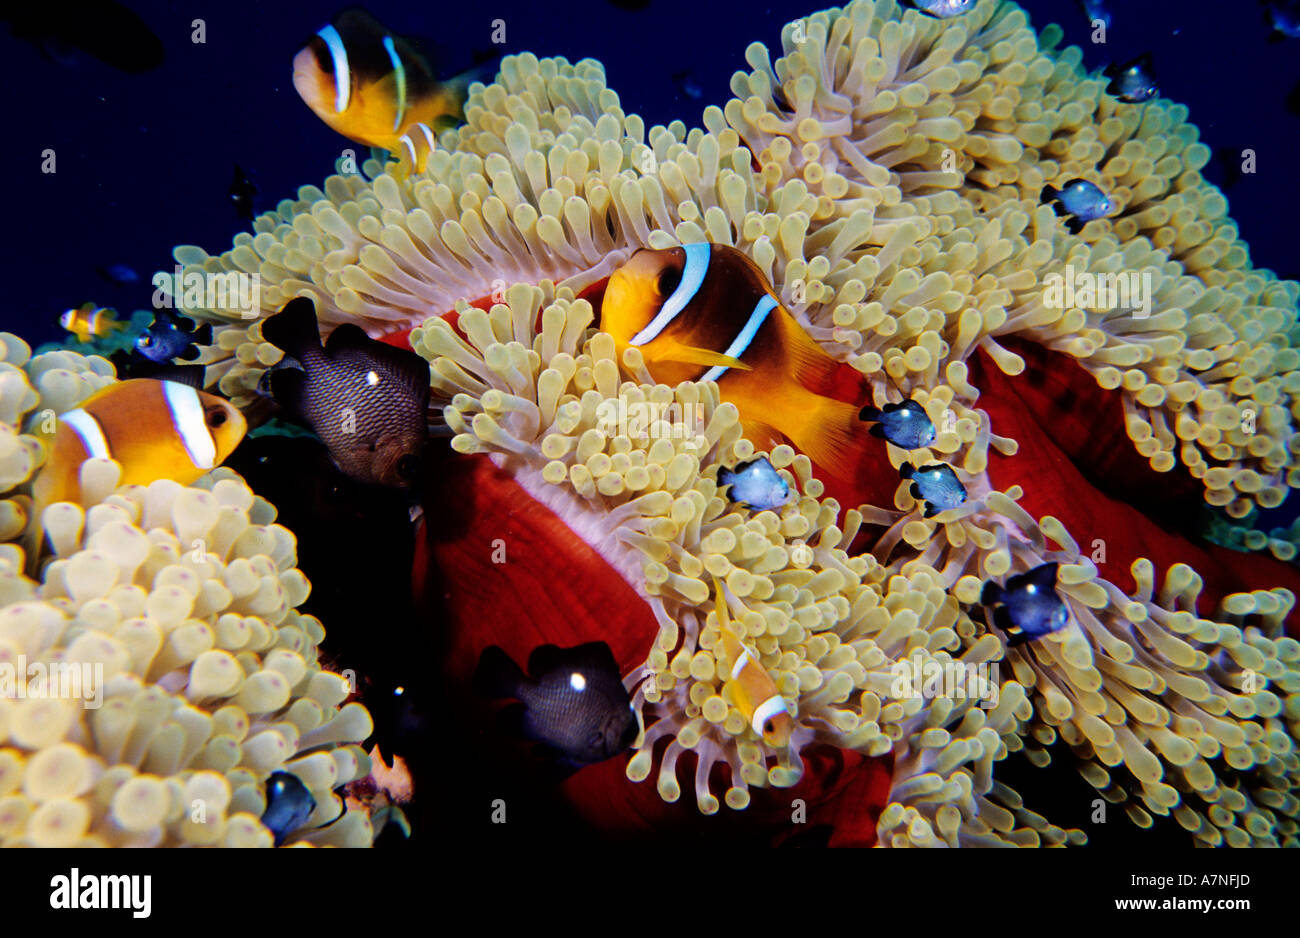 Egitto, Mar Rosso, anemonefishes e damselfishes nero in una spugna rossa Foto Stock